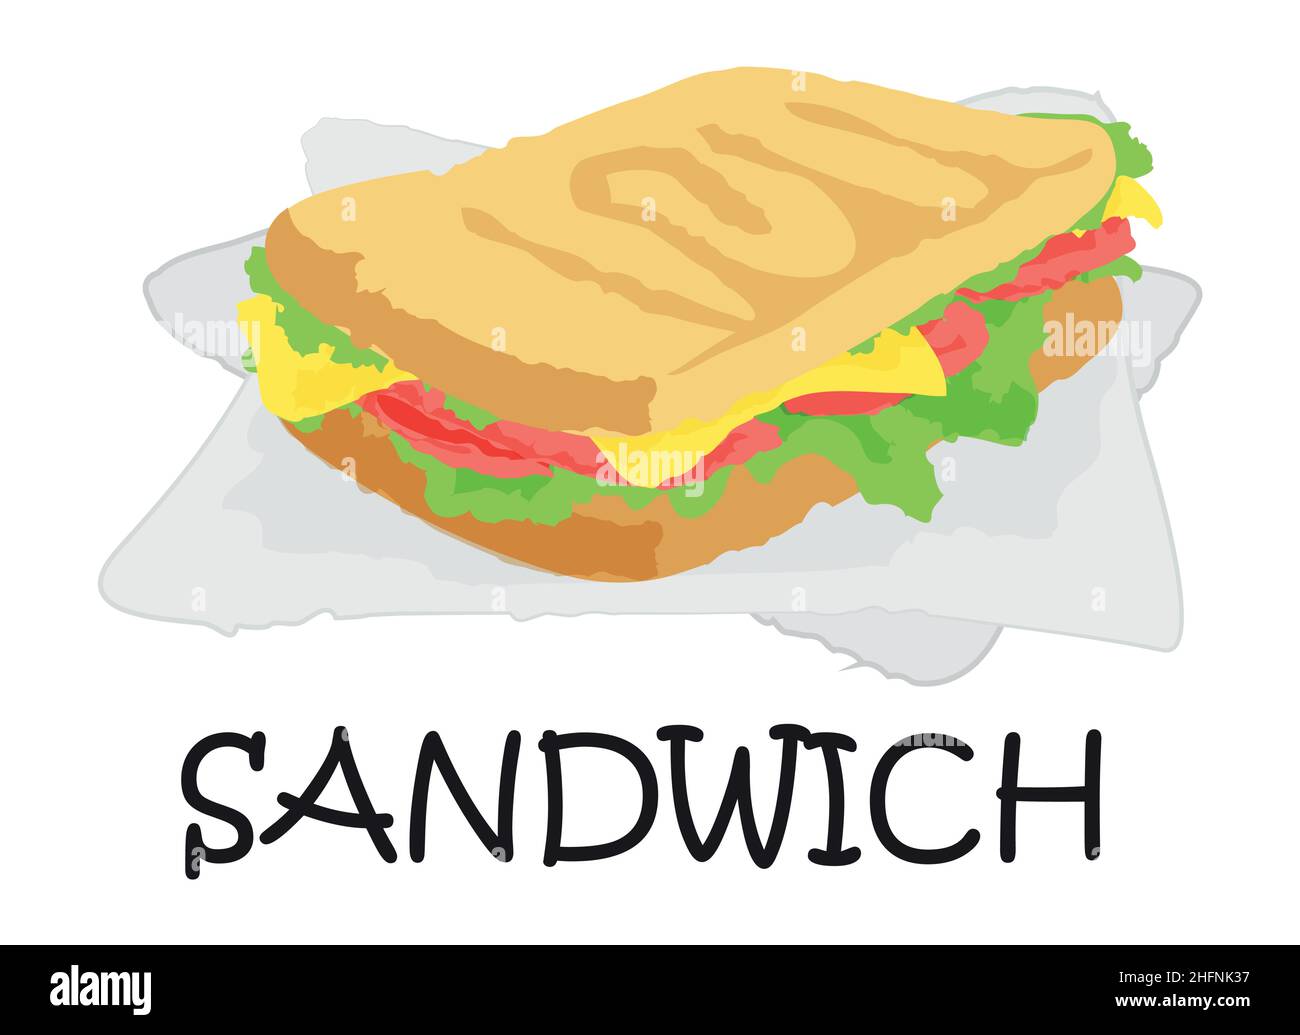 Adesivo sandwich. Illustrazione vettoriale in stile acquerello, per grafica e web design Illustrazione Vettoriale